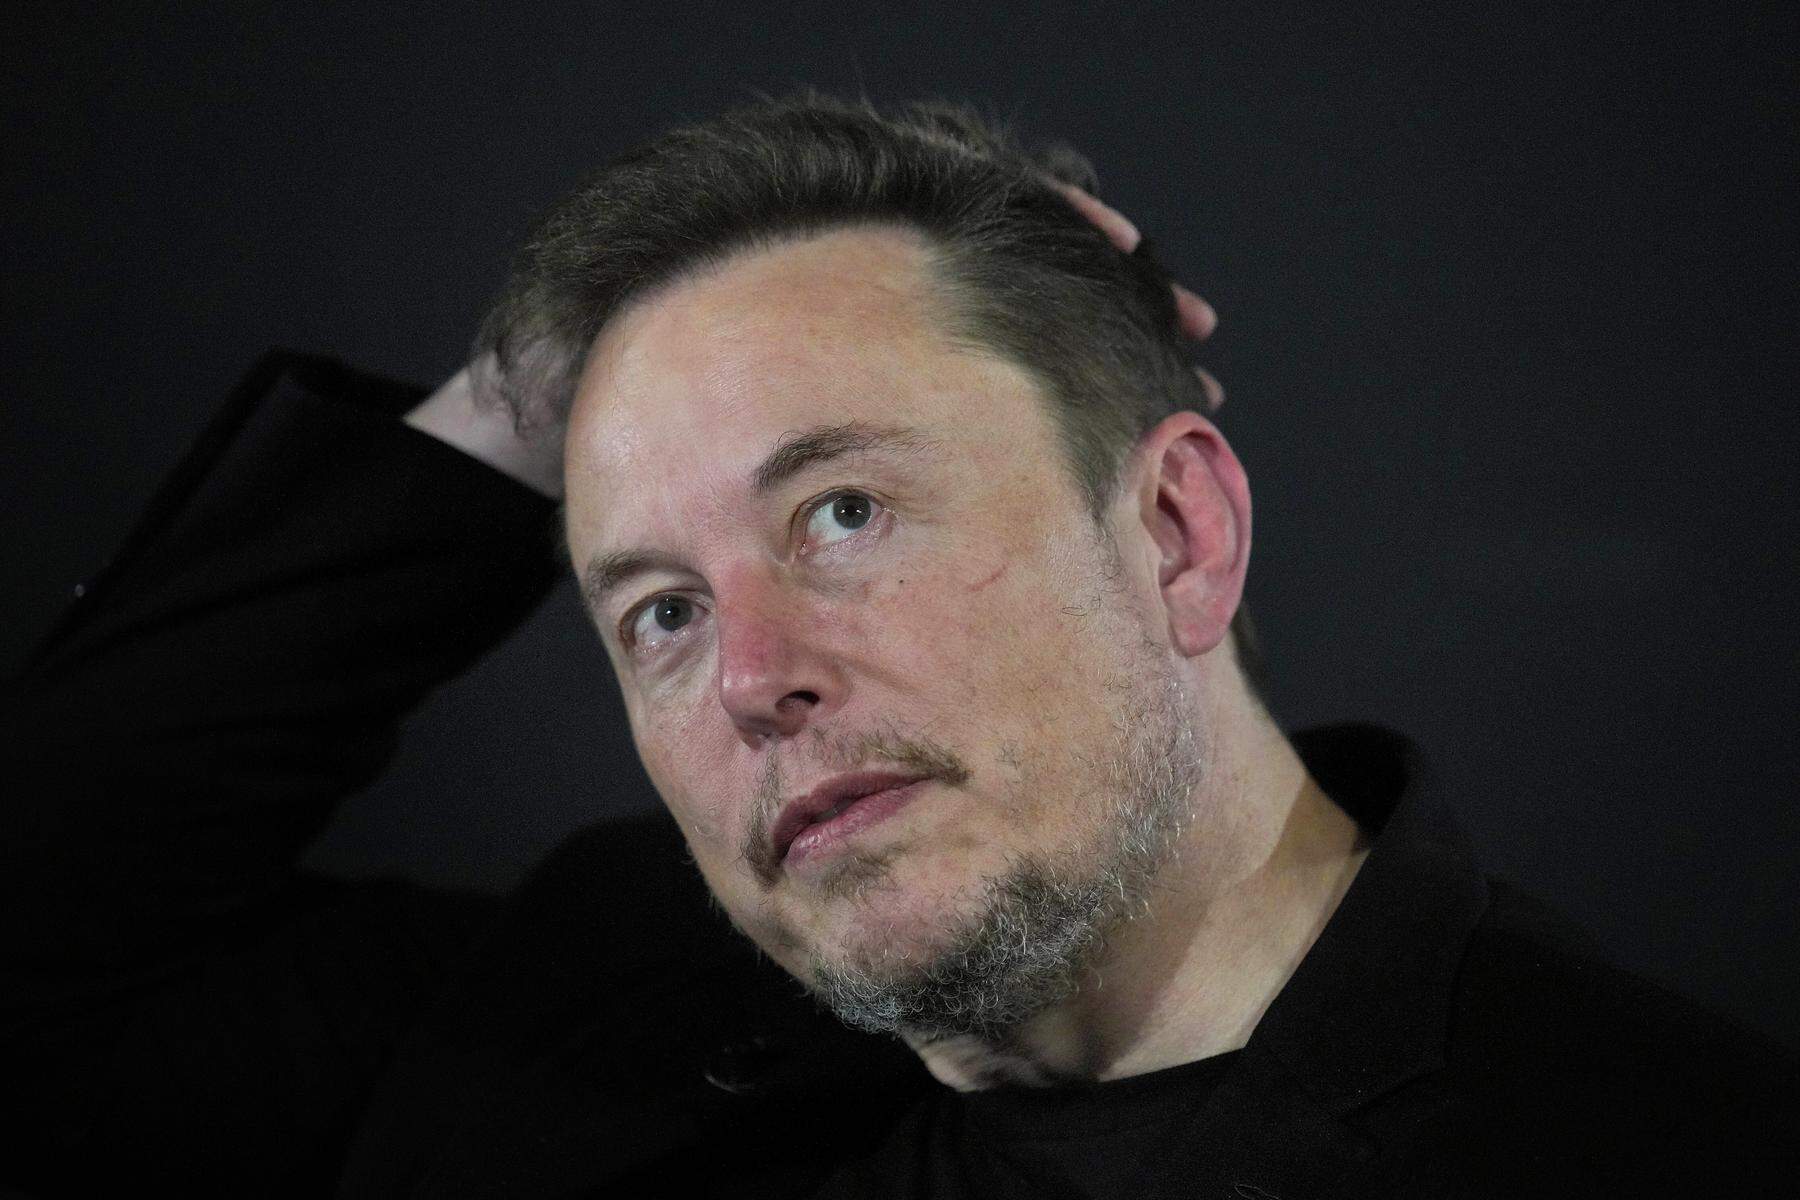 Sorge um Zurechungsfähigkeit | Elon Musk soll laut Medienbericht in größerem Stil Drogen nehmen